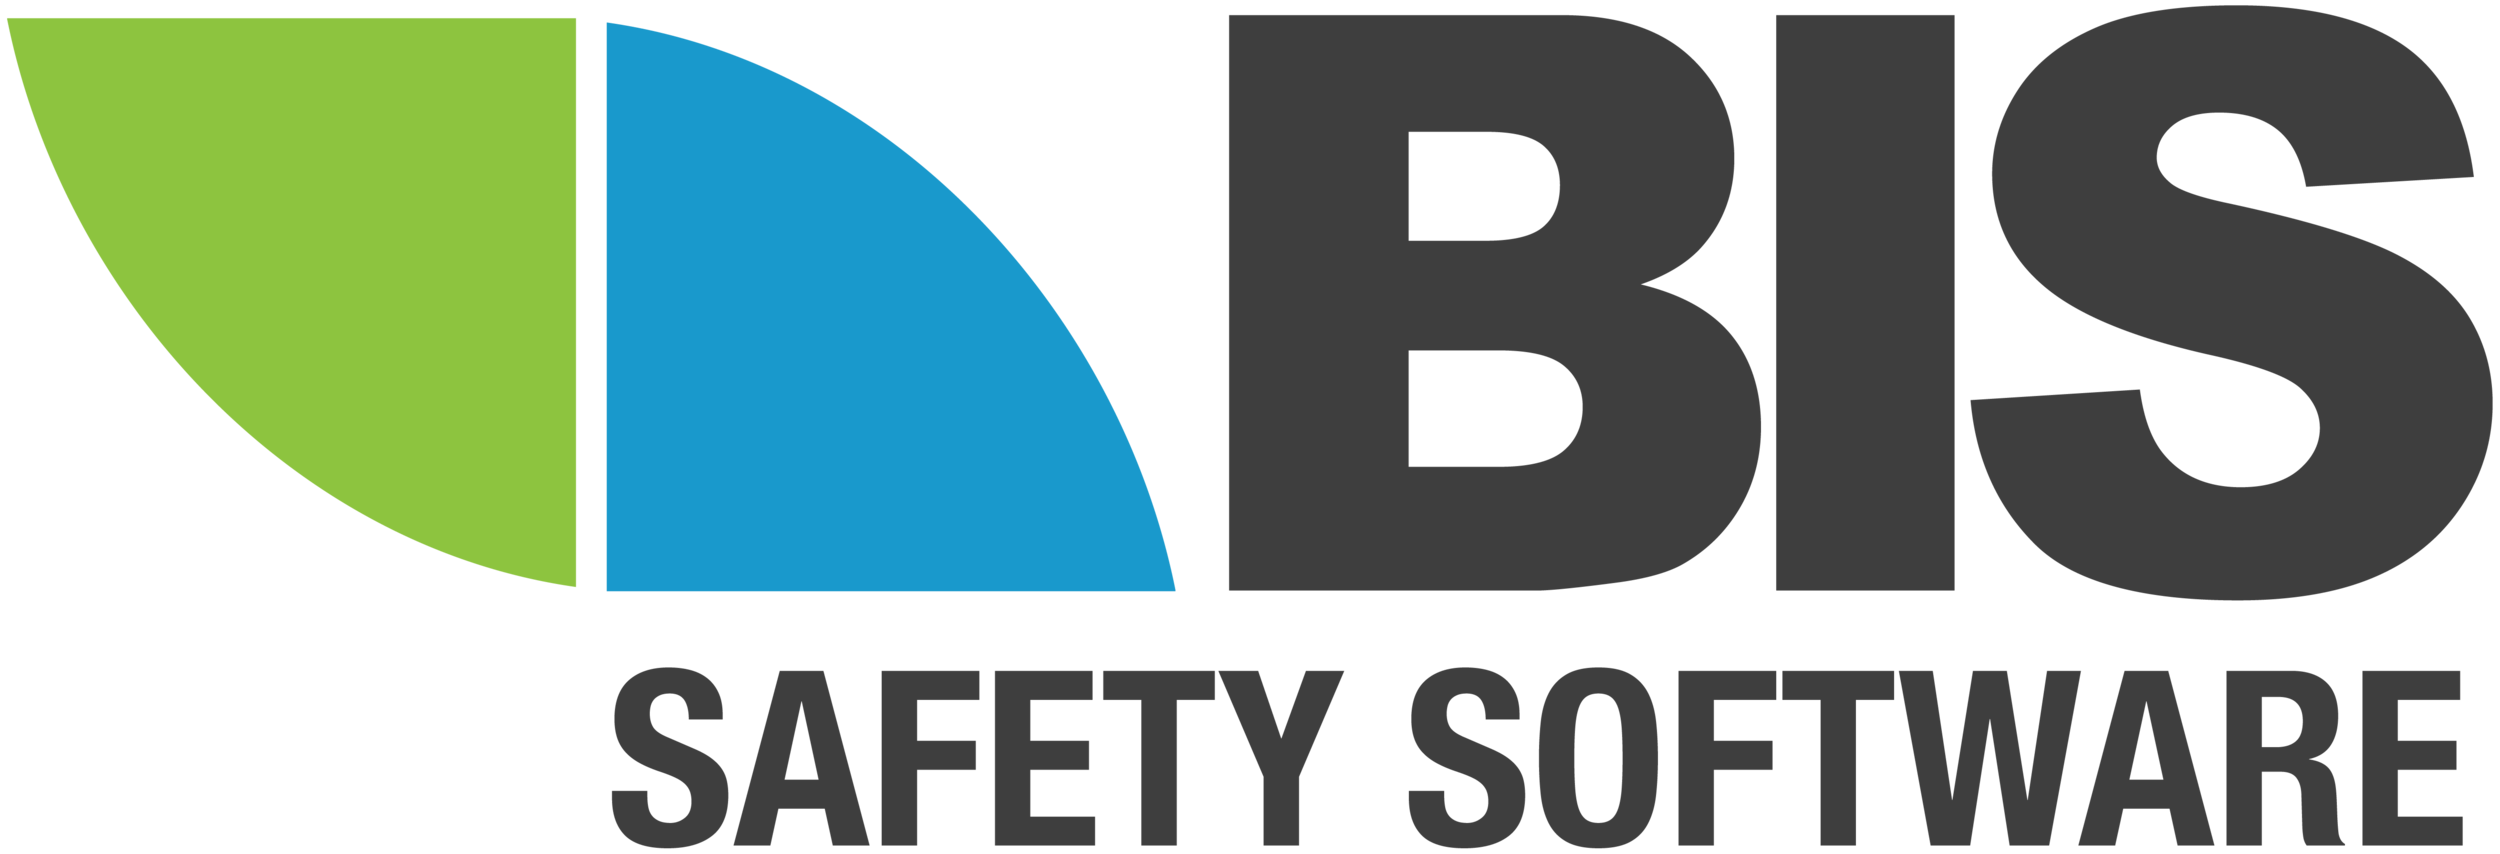 BIS_Logo-Colour.png